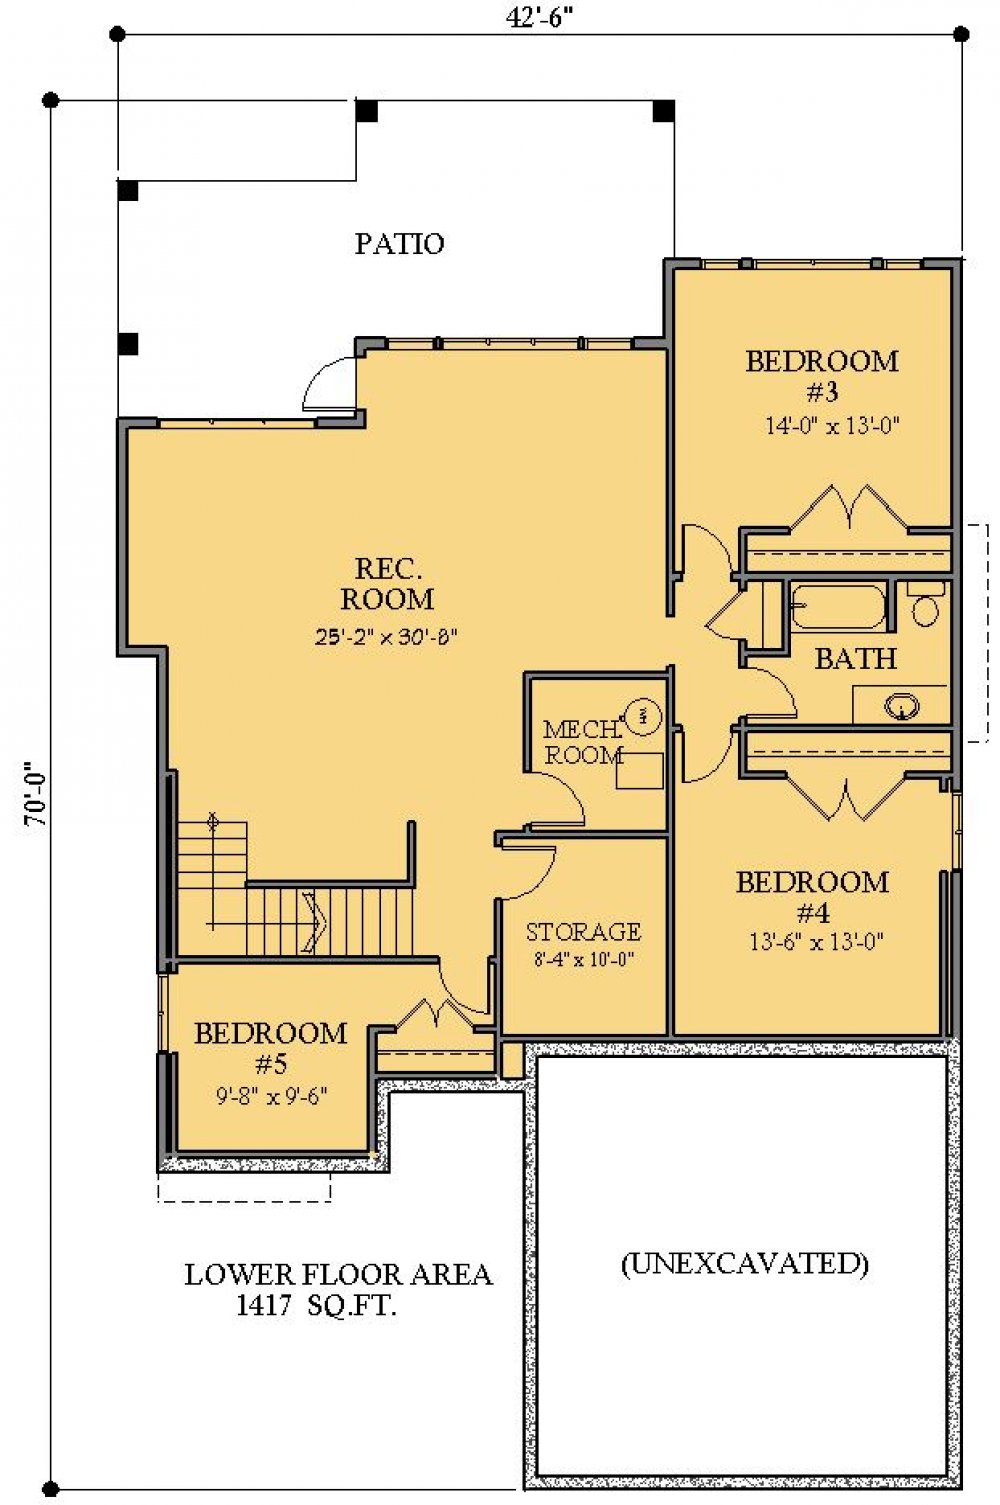 House Plan E1731-50 Lower Floor Plan 